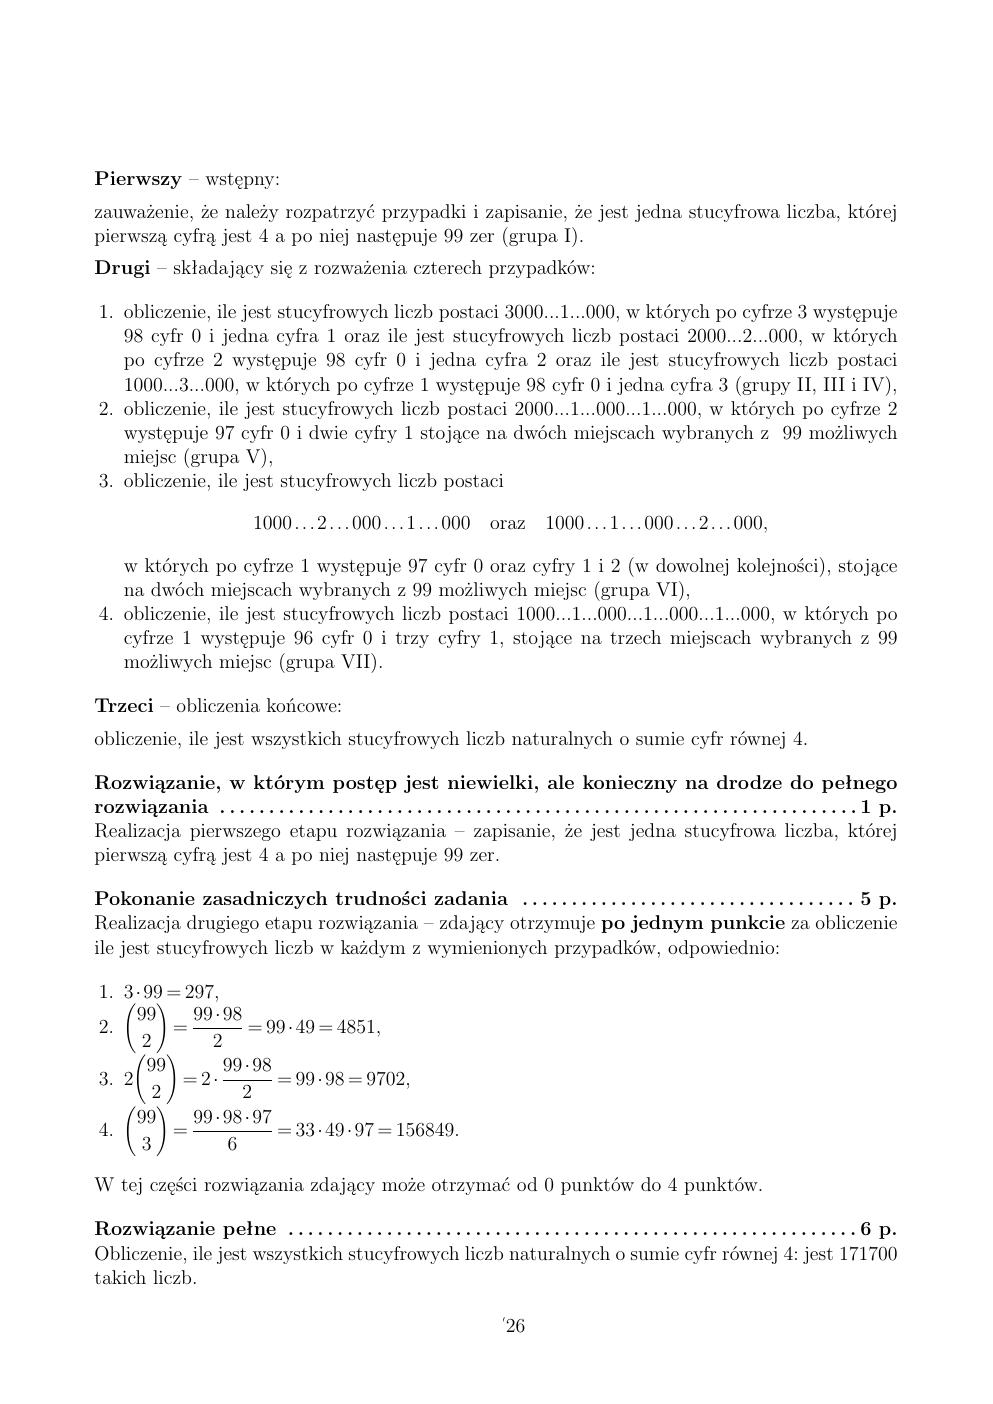 zasady oceniania - odpowiedzi - matematyka rozszerzony - matura 2015 przykładowa-26